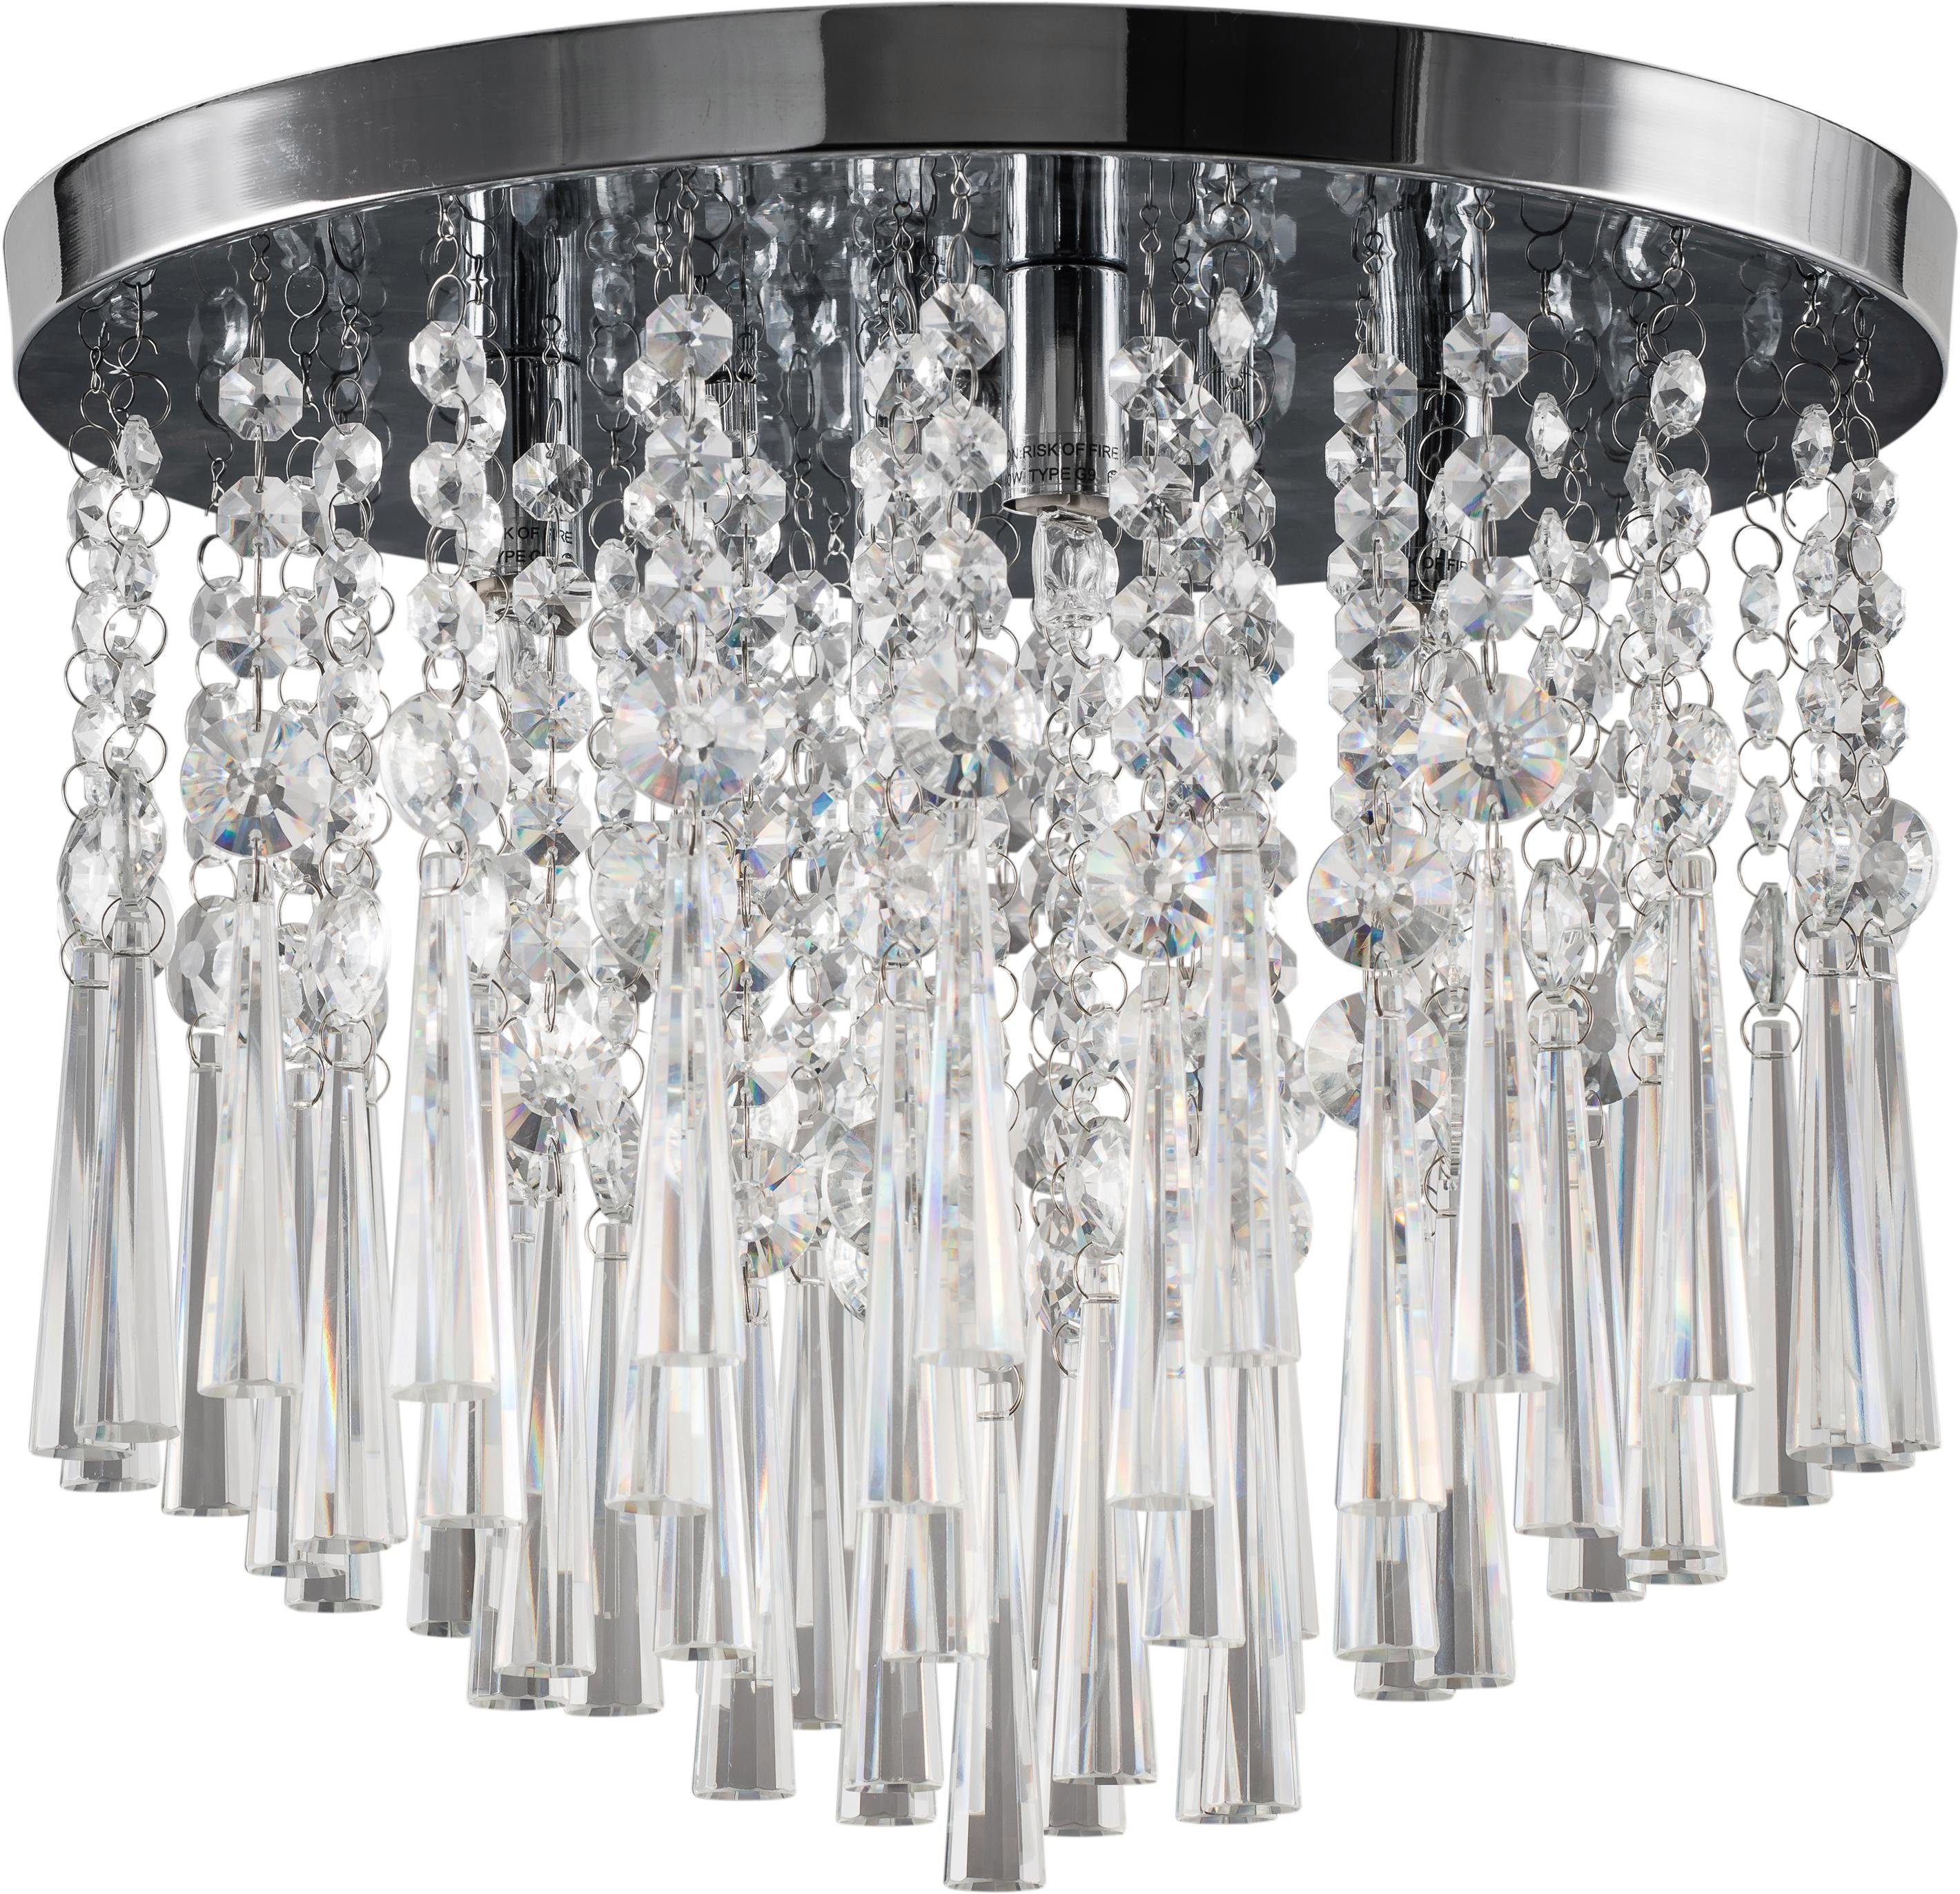 SPOT Light Plafondlamp LUXORIA Hoogwaardige lamp met echte kristallen, ledverlichting inclusief, tijdloos en elegant.